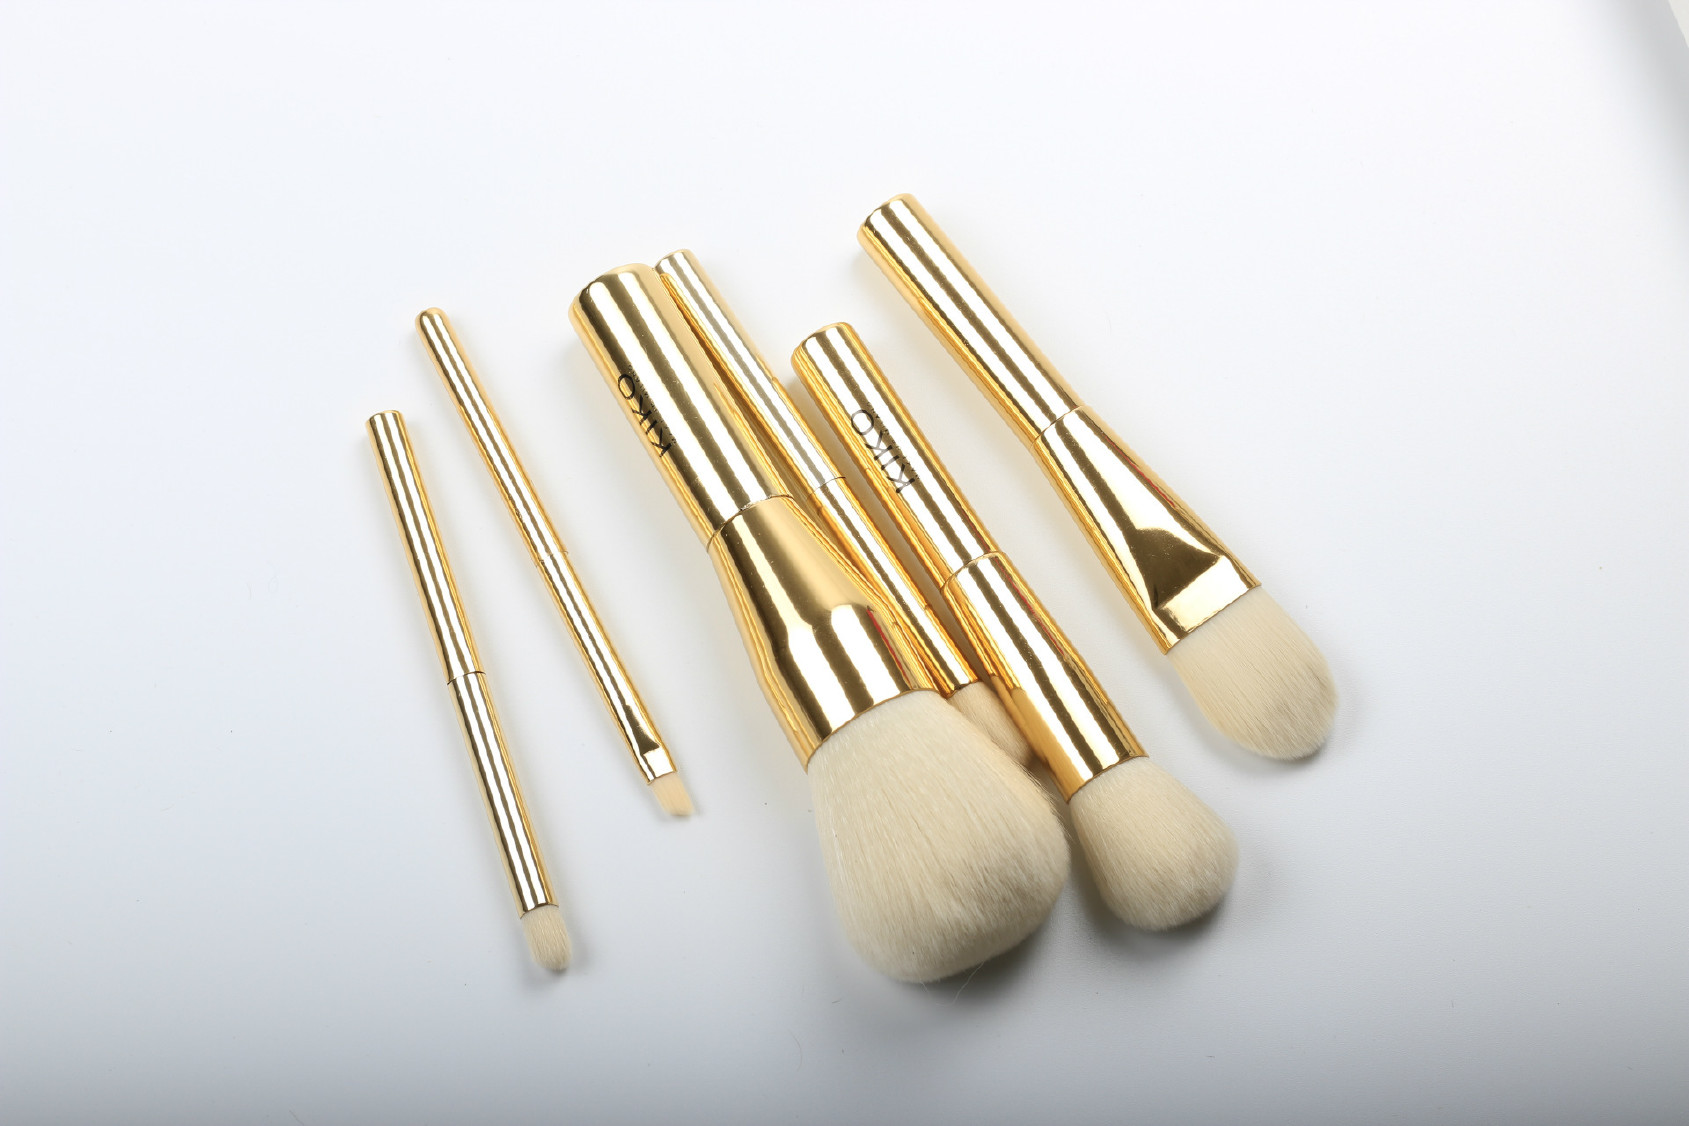 意大利kiko化妆刷 6支金色铝管化妆刷套装 专业化妆美妆工具示例图7